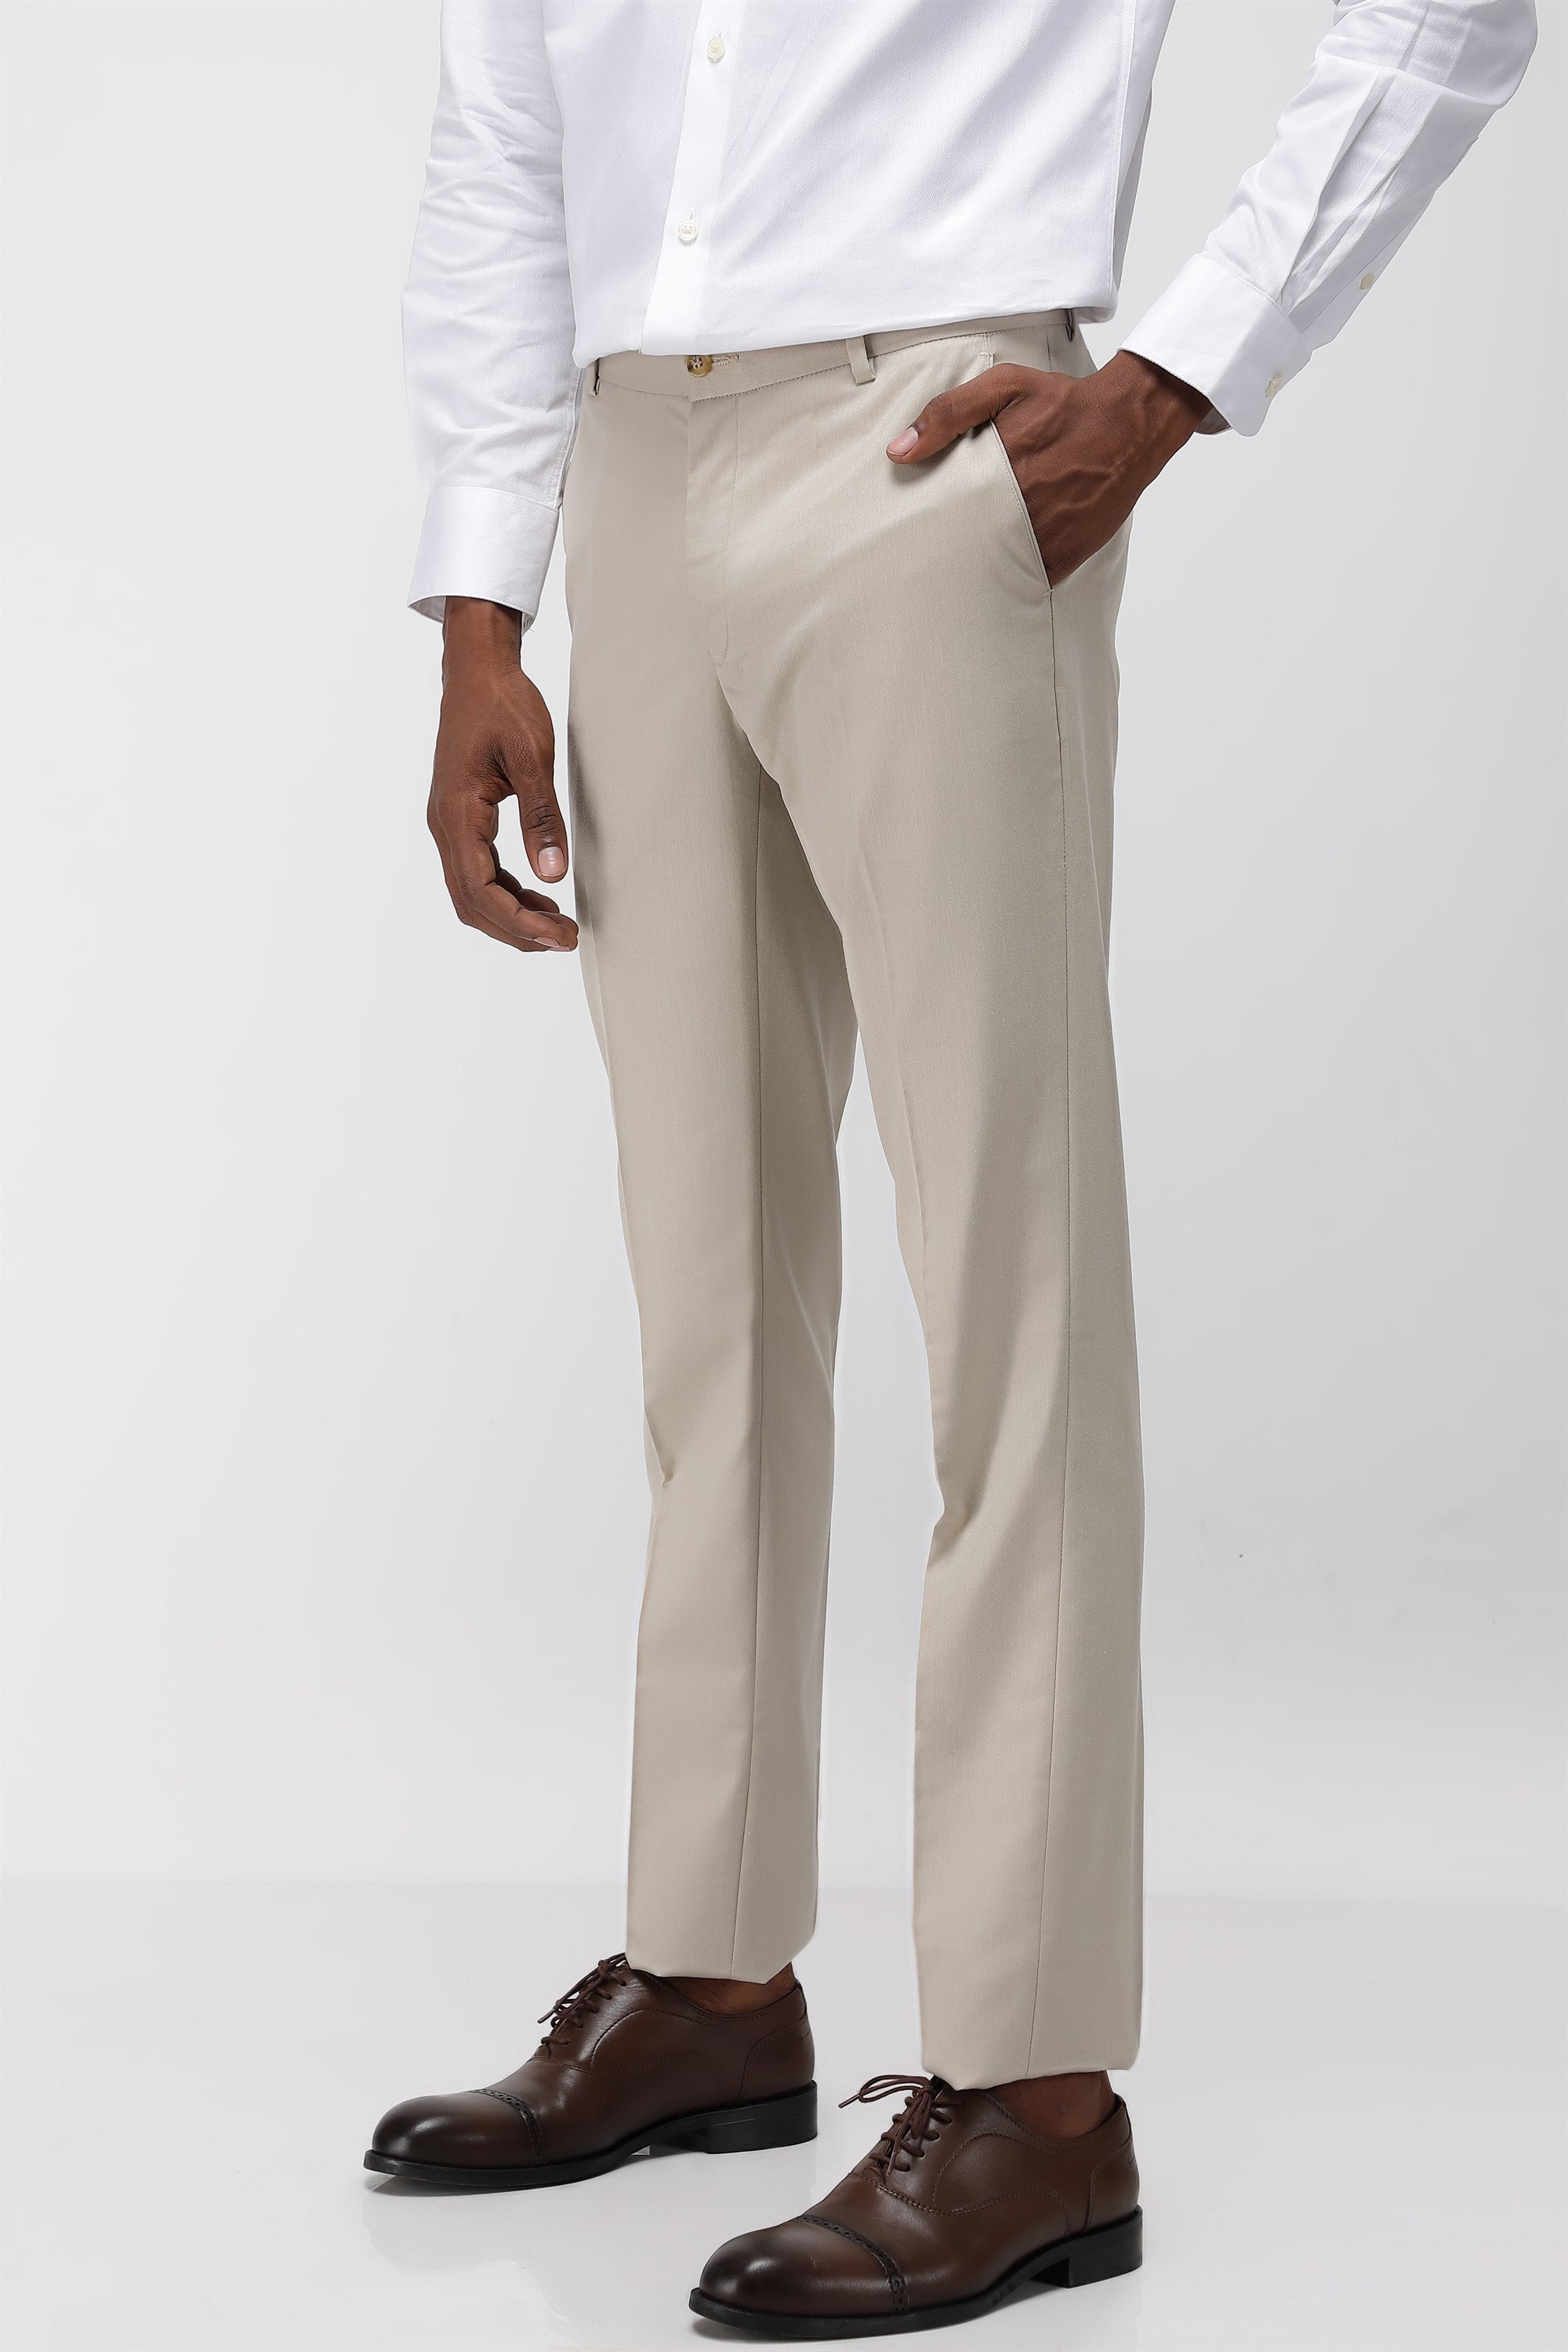 Plain Branded Formal Trousers For Men at Best Price in Gurugram | Value  Shoppe Retail Pvt. Ltd.